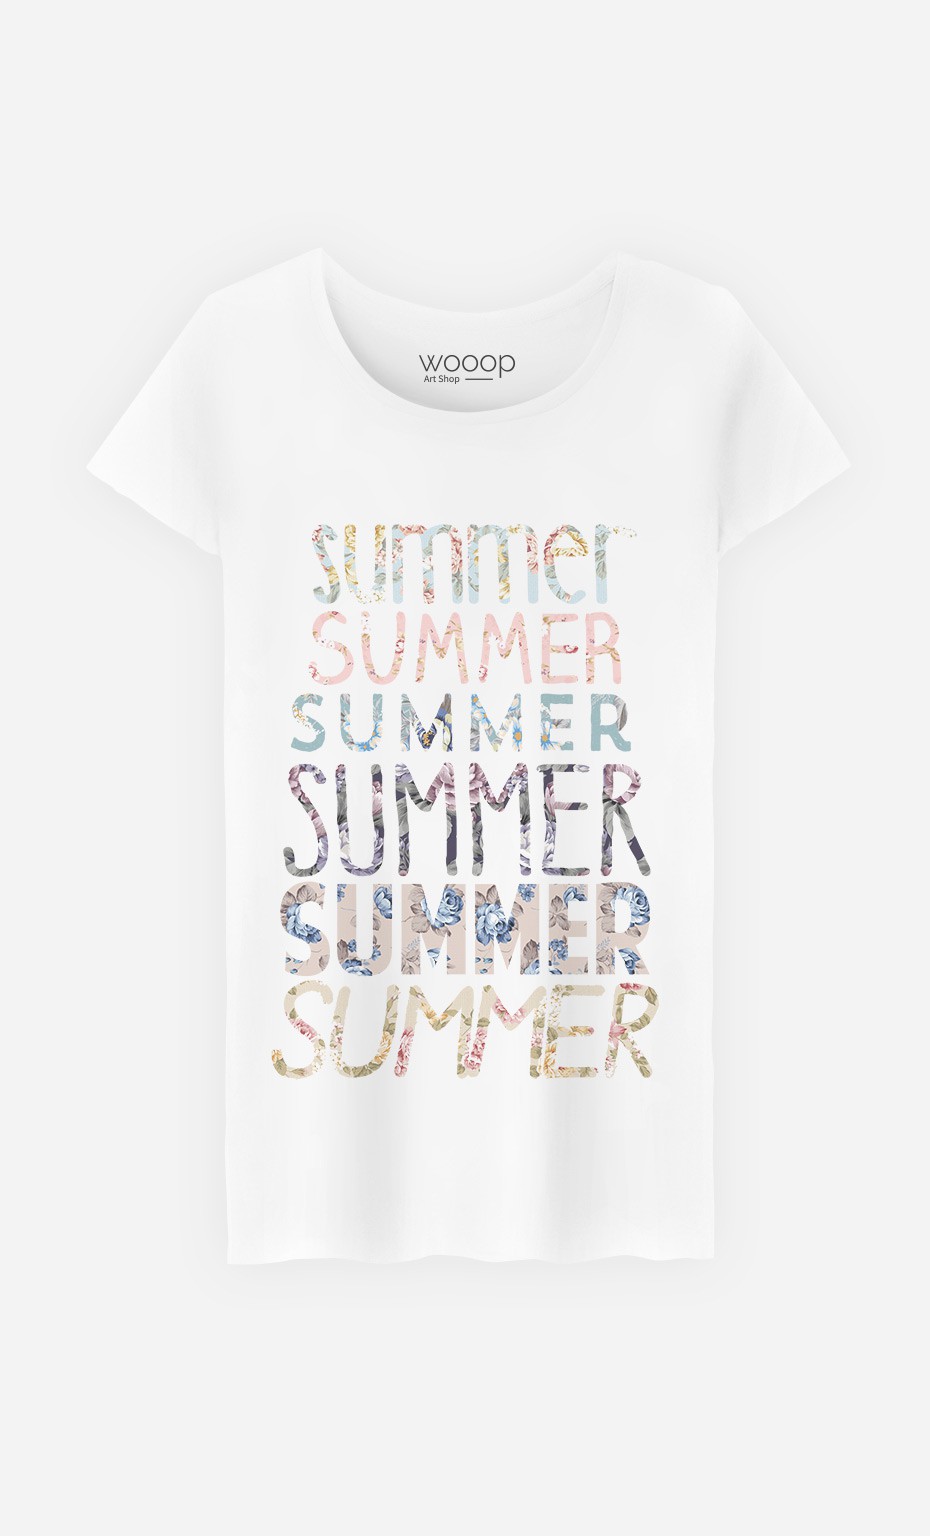 T-Shirt Femme Summer